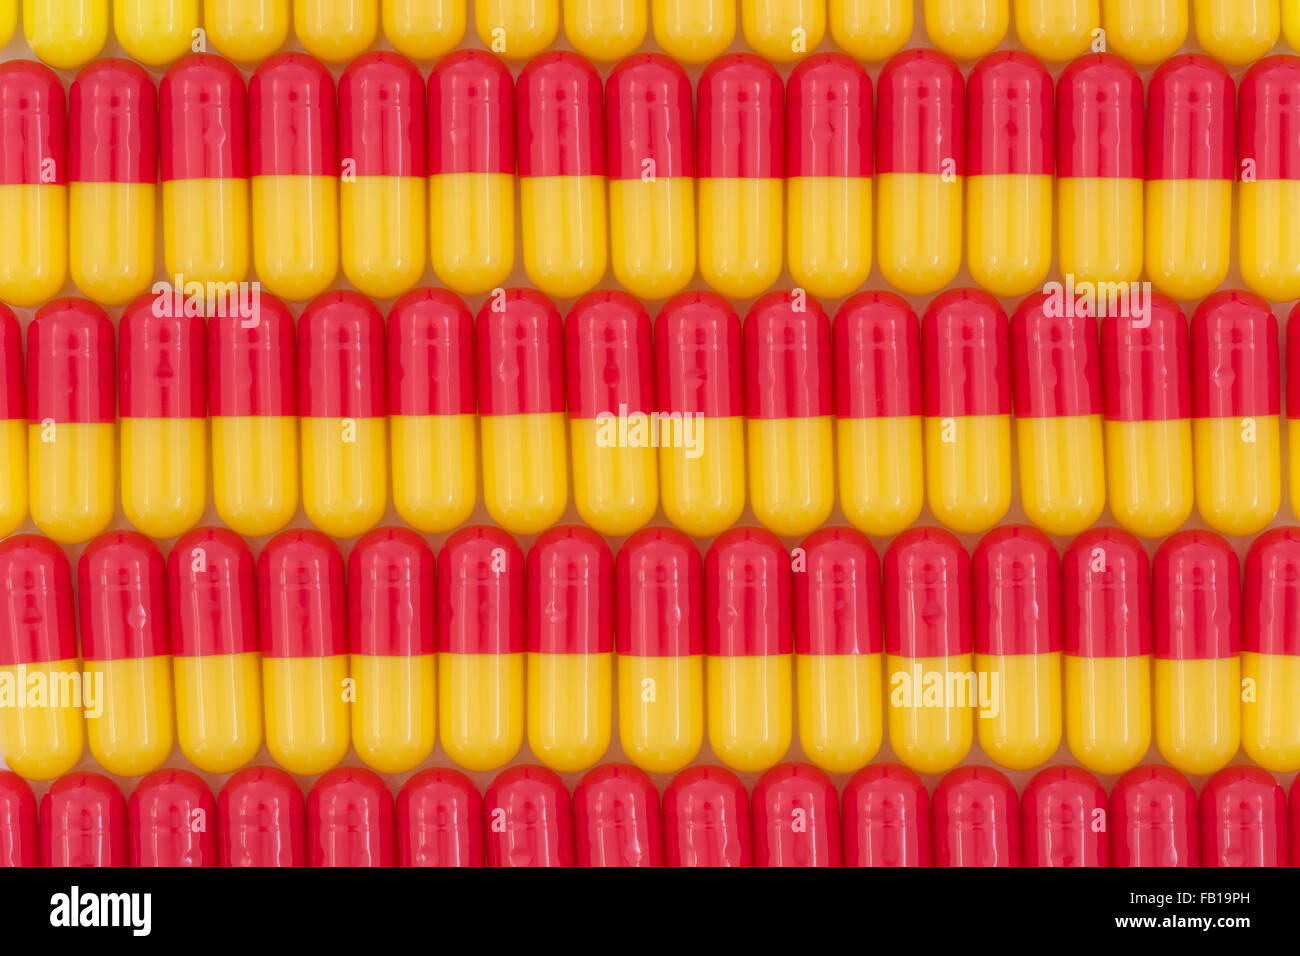 Primer plano de pastillas - forma de cápsula hecha de gelatina. Pastillas rojas / amarillas, metáfora de tomar en las compañías estadounidenses de drogas sobre los altos precios de las drogas, pruebas de drogas. Foto de stock